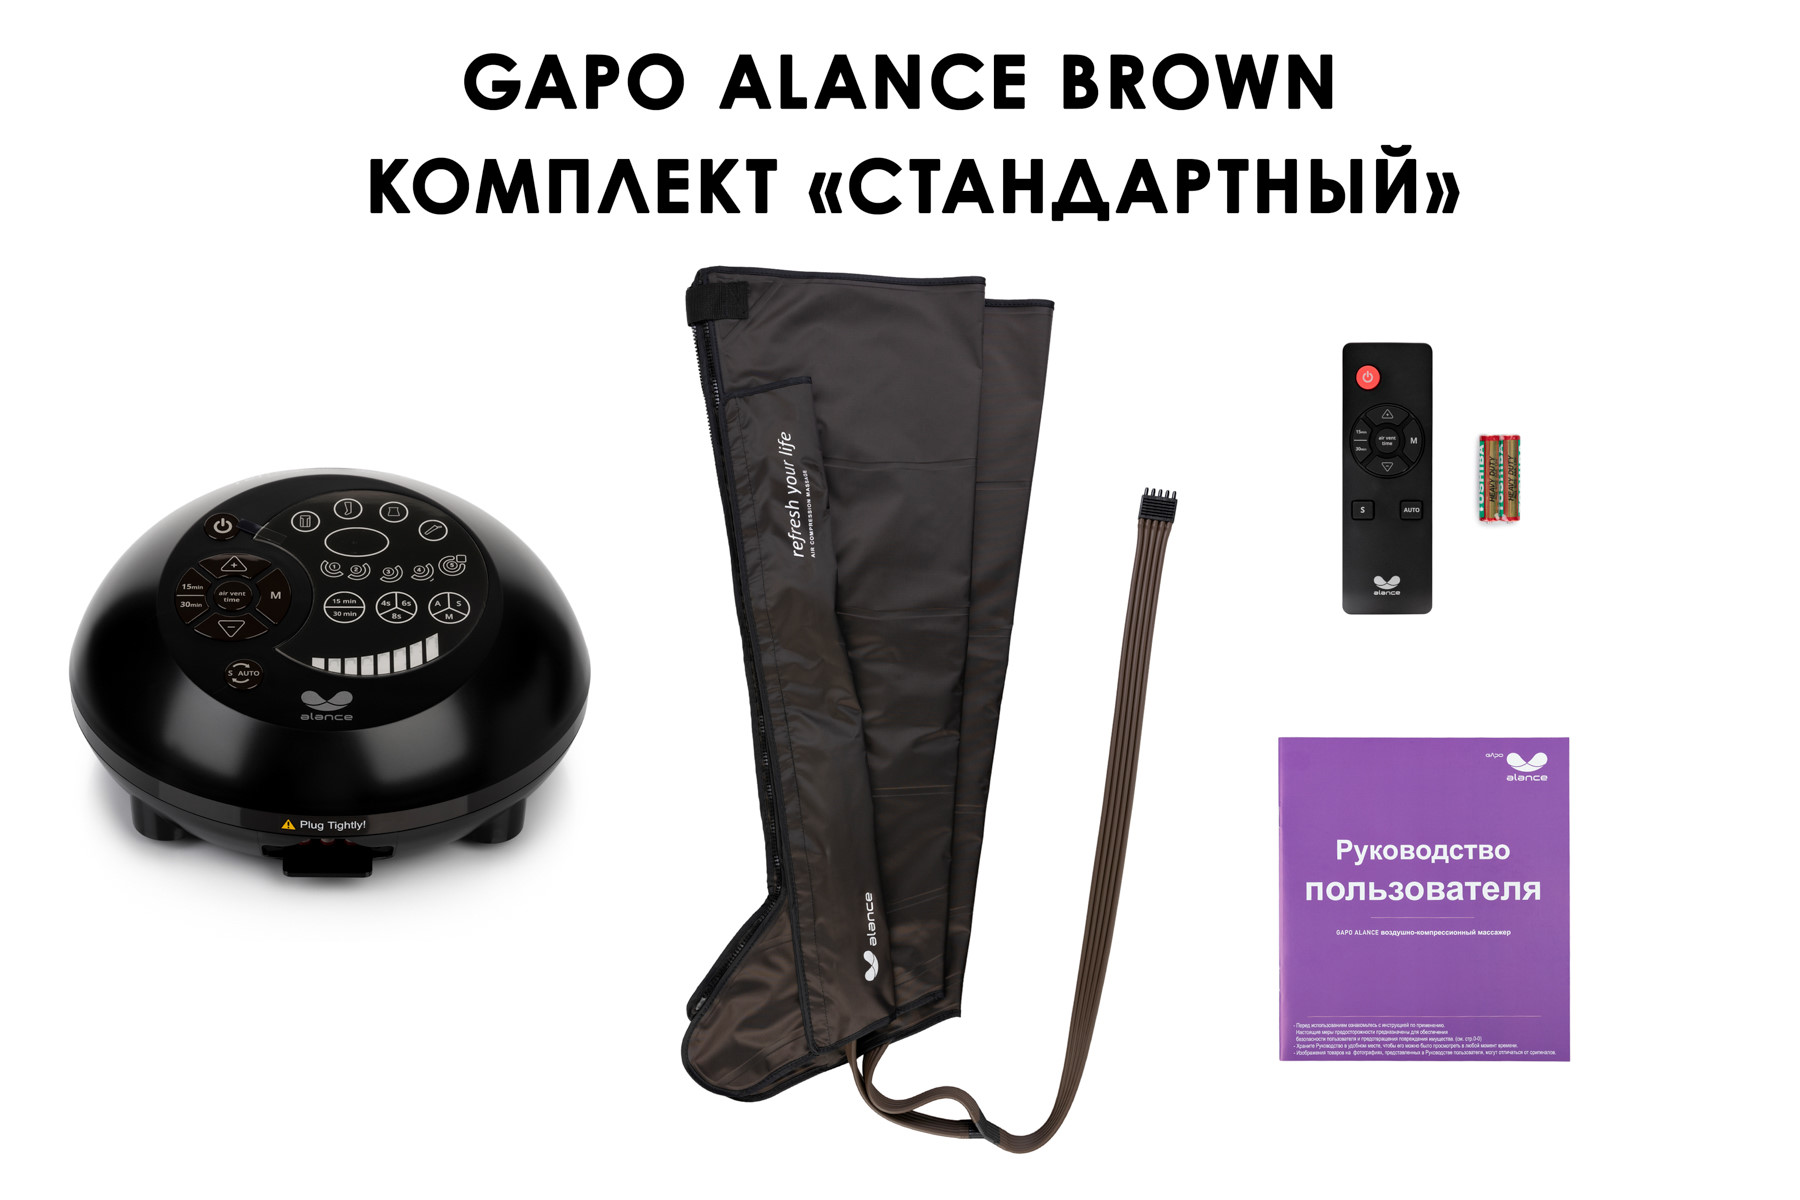 Лимфодренажный аппарат Gapo Alance GSM031 Комплект "Стандартный" (Размер XXL) Brown